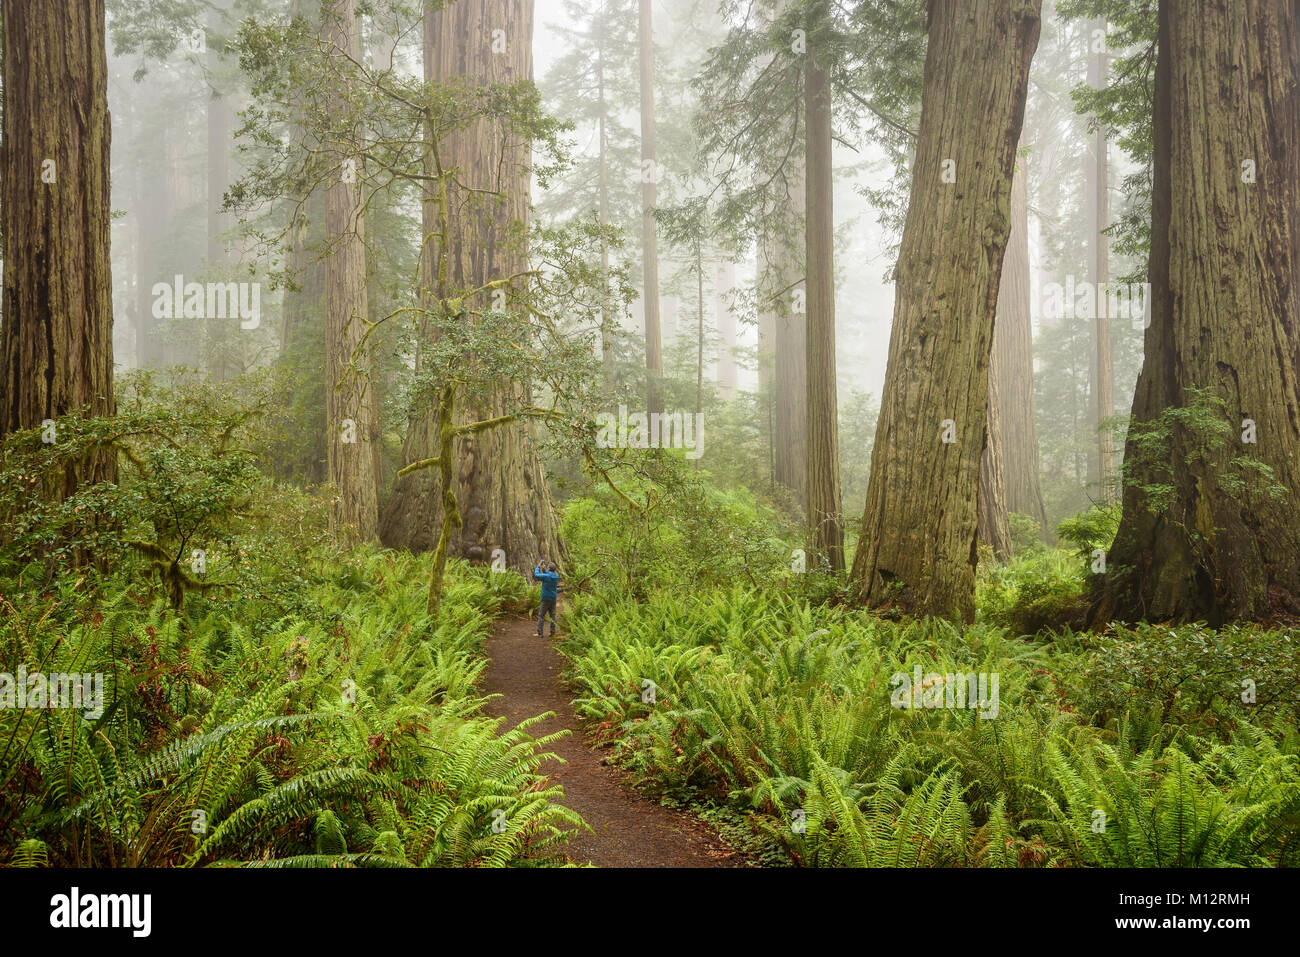 Visiteur de prendre photo de redwood tree with cell phone in Lady Bird Johnson Grove, séquoias Parcs nationaux et d'État, la Californie. Banque D'Images